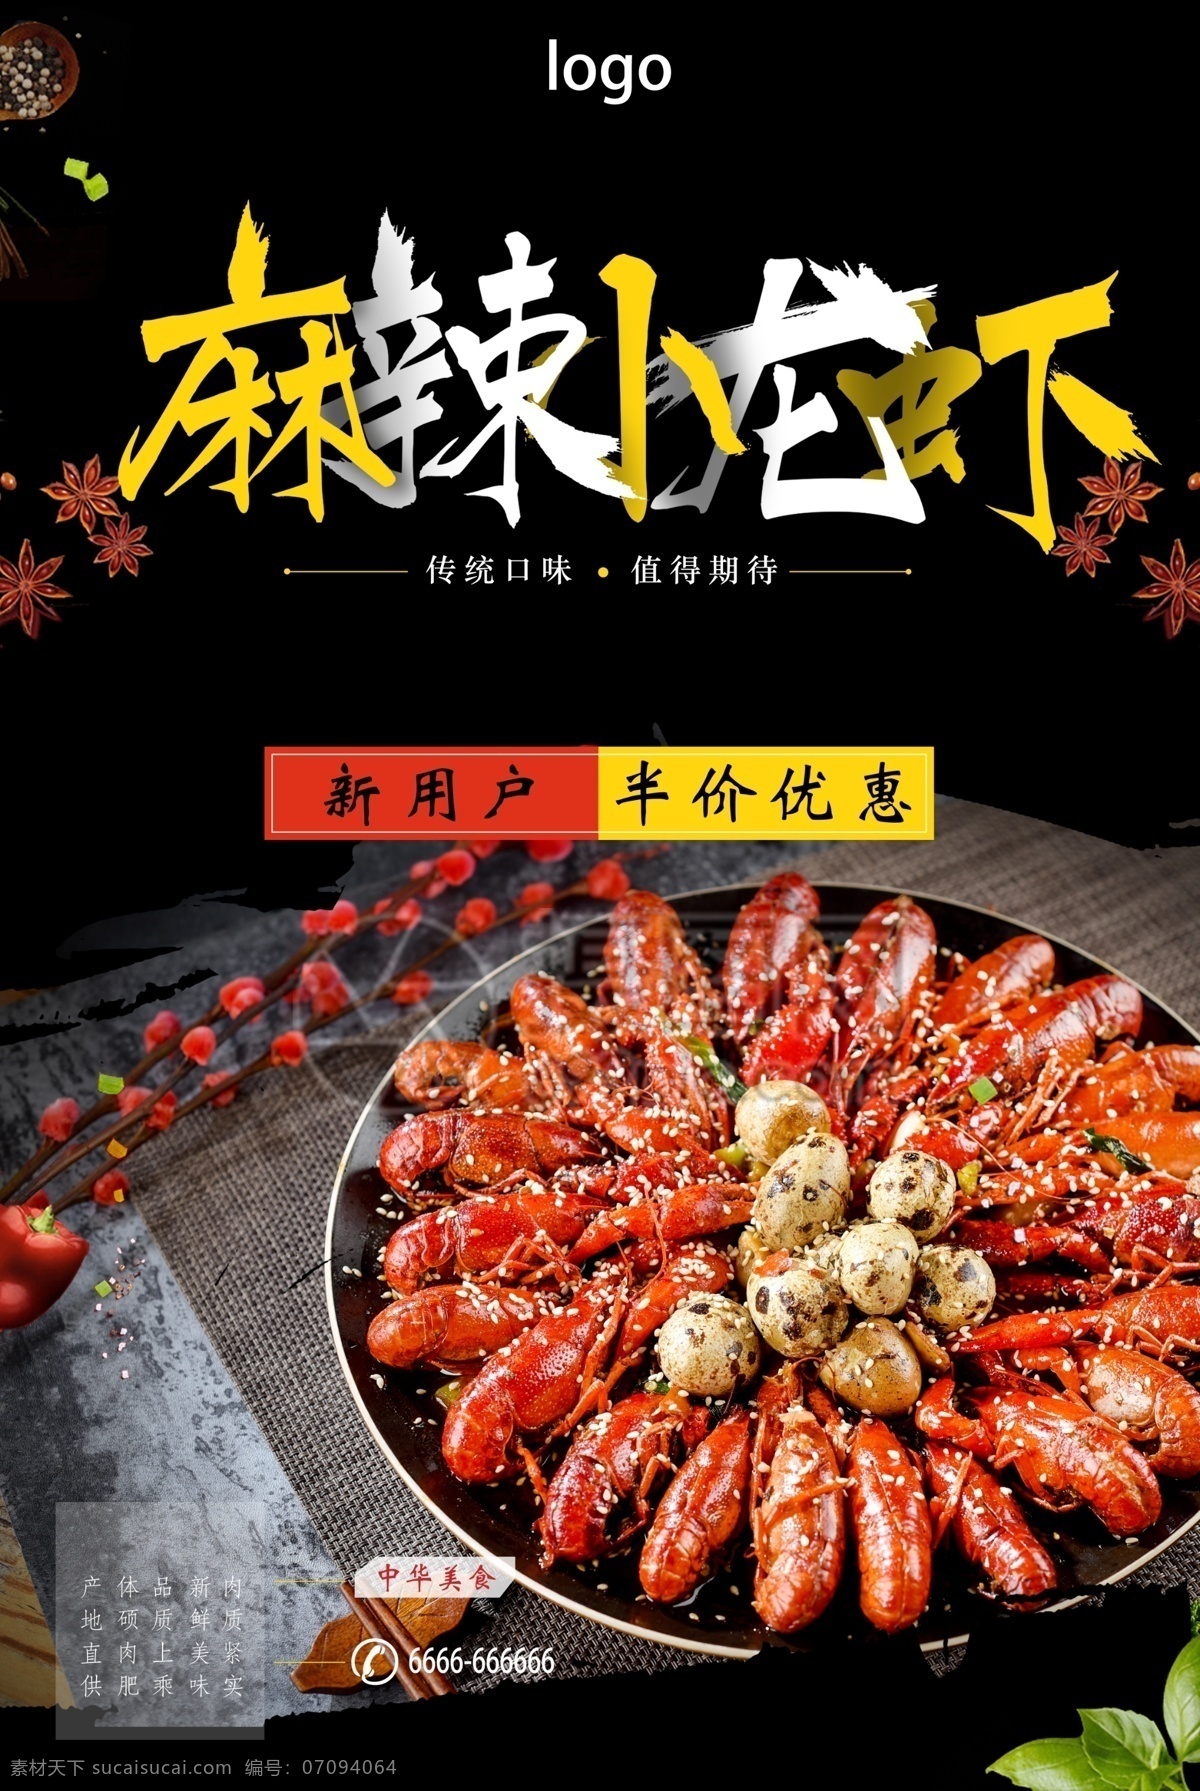 麻辣 小 龙虾 促销 海报 小龙虾 中华美食 黑色 夜宵 夏季小吃 美食